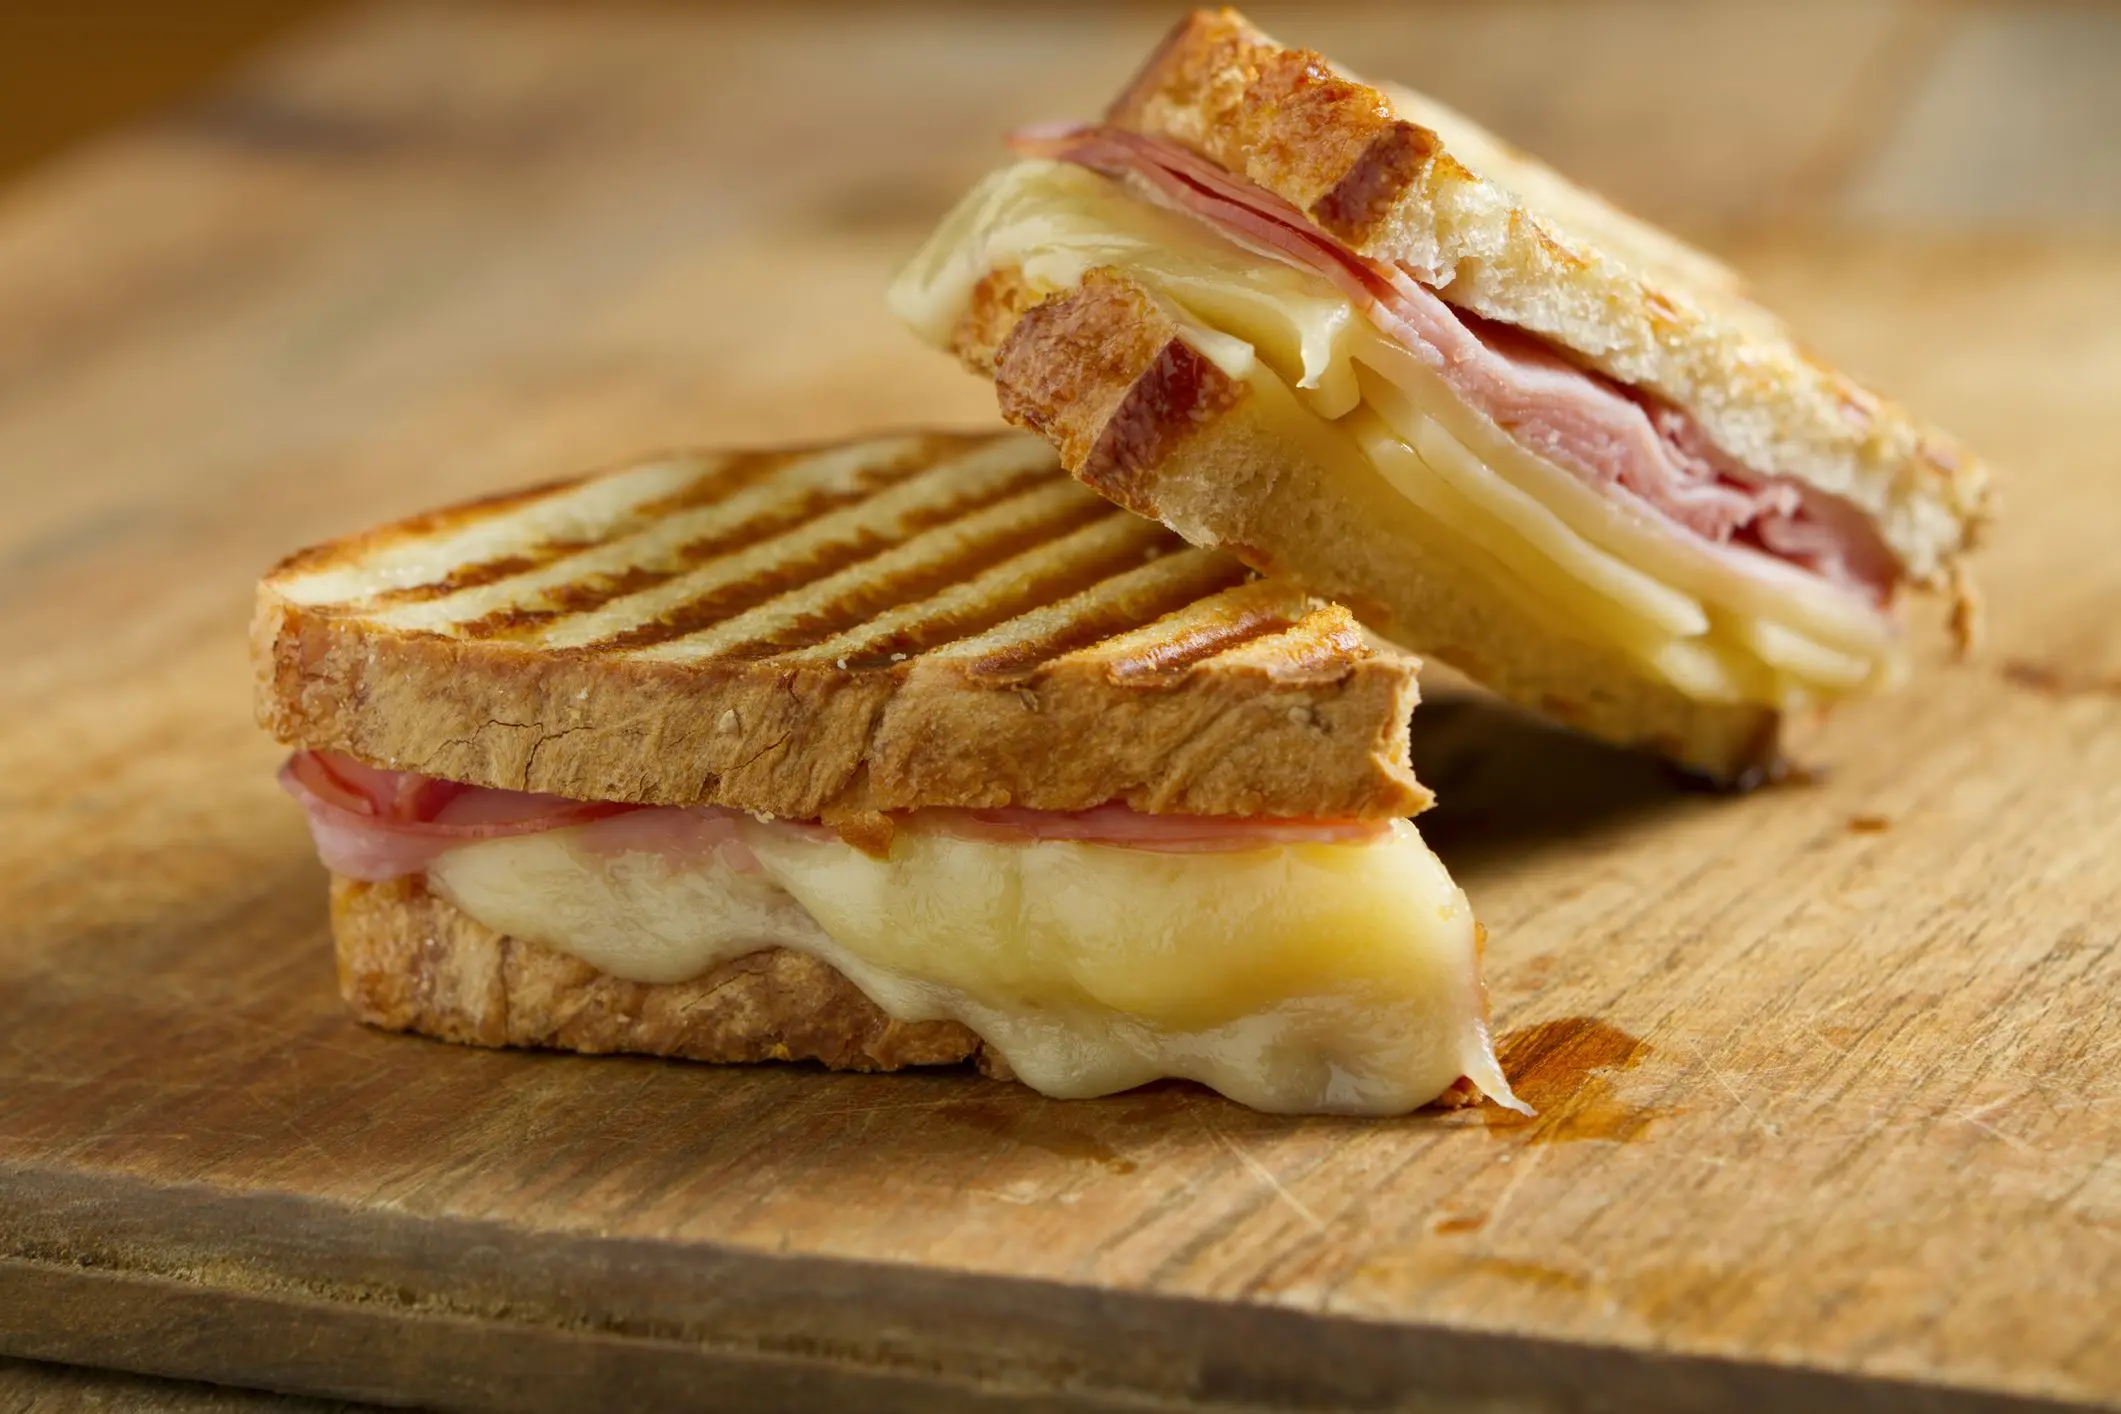 como se hace un sandwich de jamon y queso - Cuántas calorías tiene un sandwich de jamón y queso y huevo